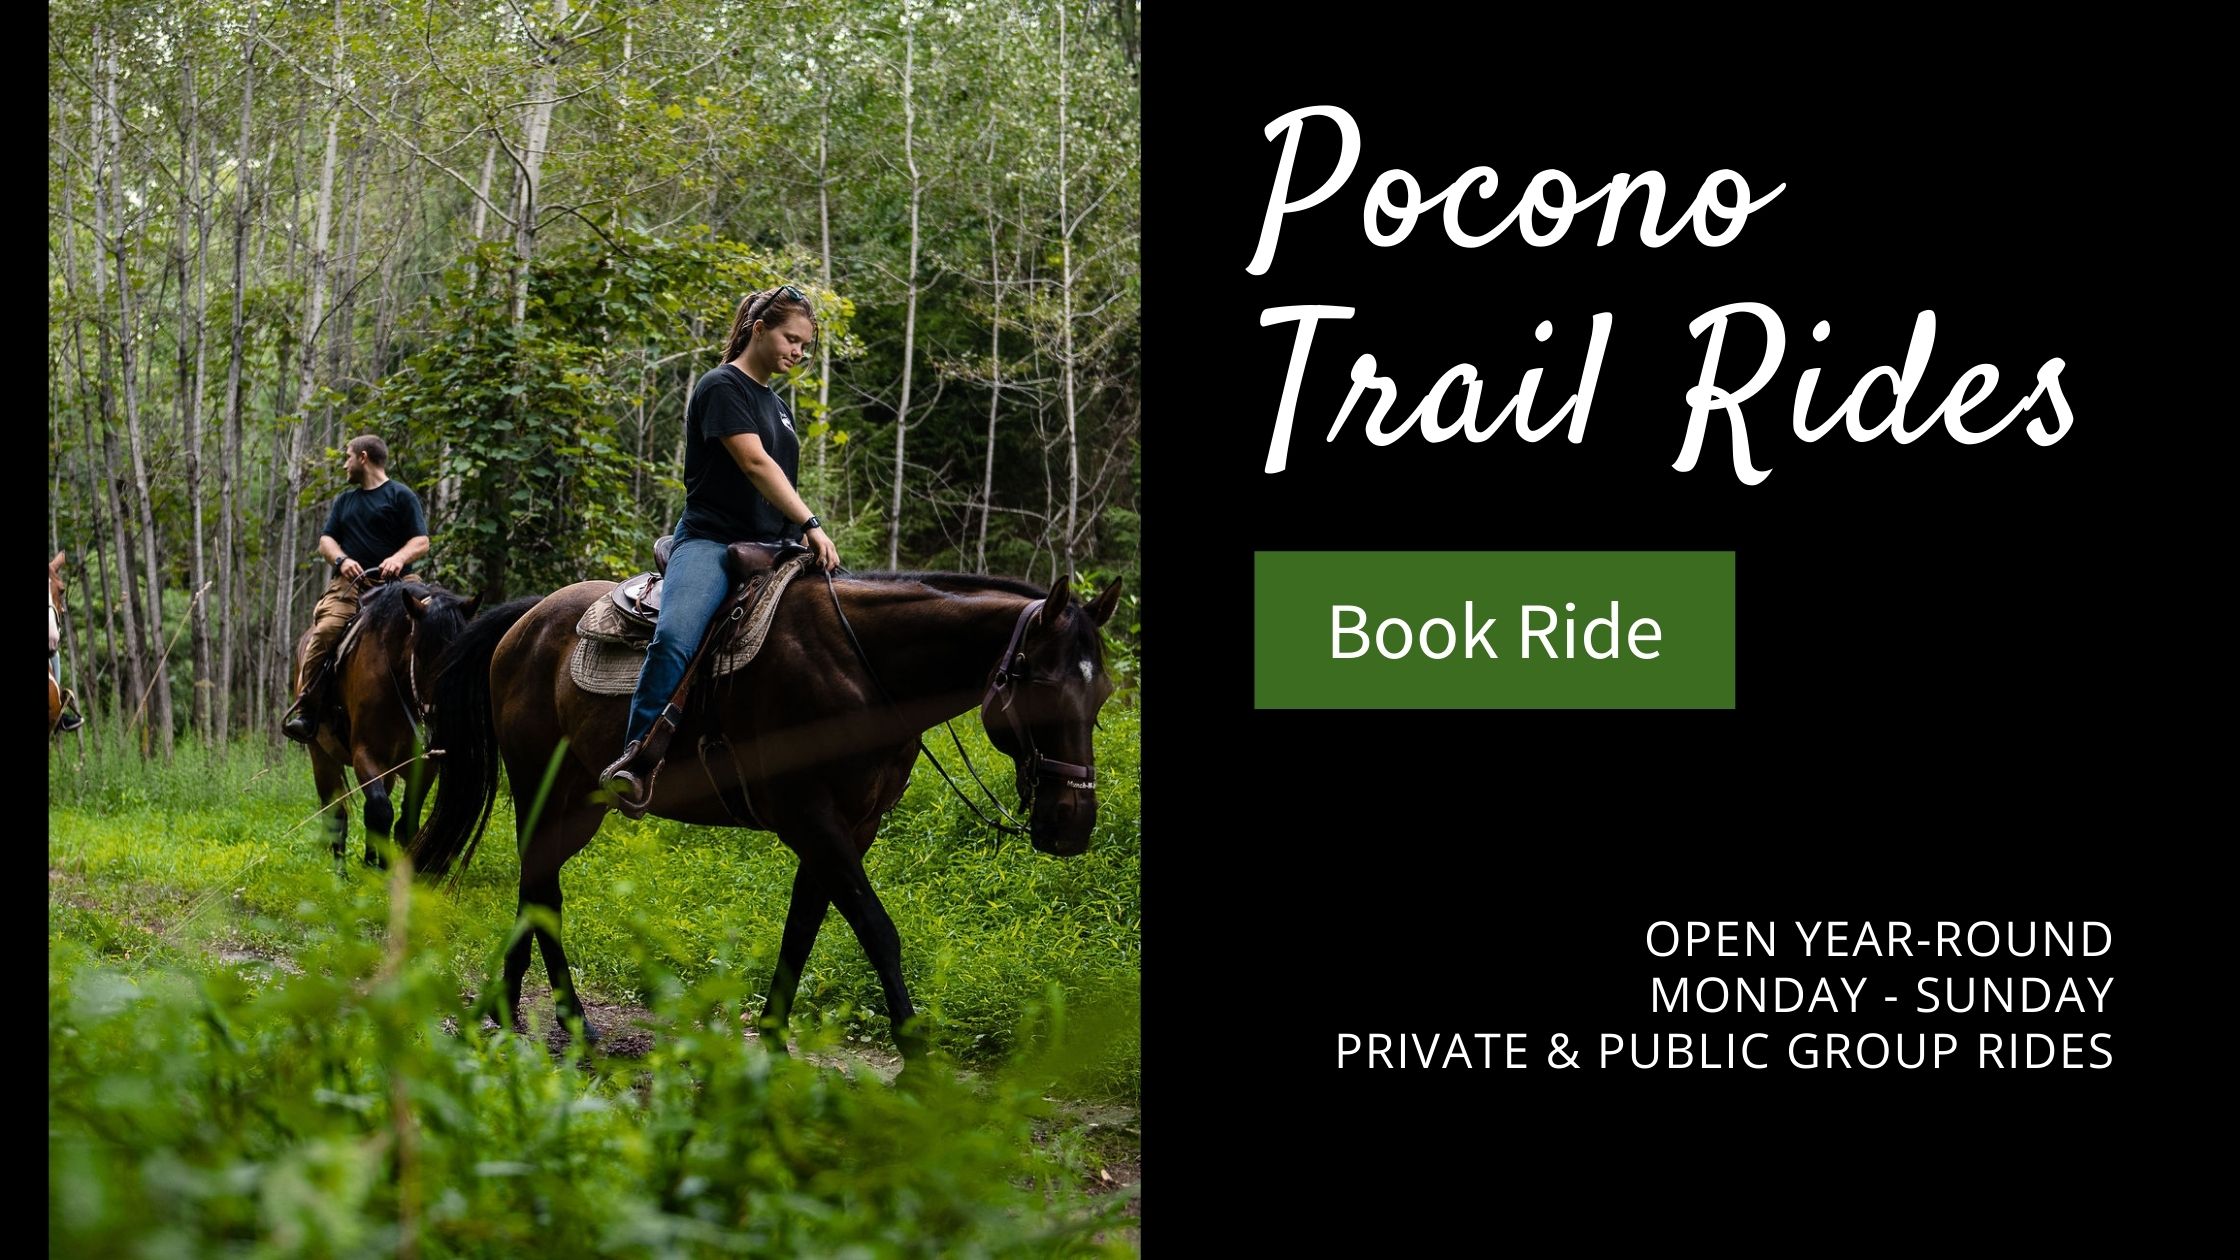 Pocono Trail Rides